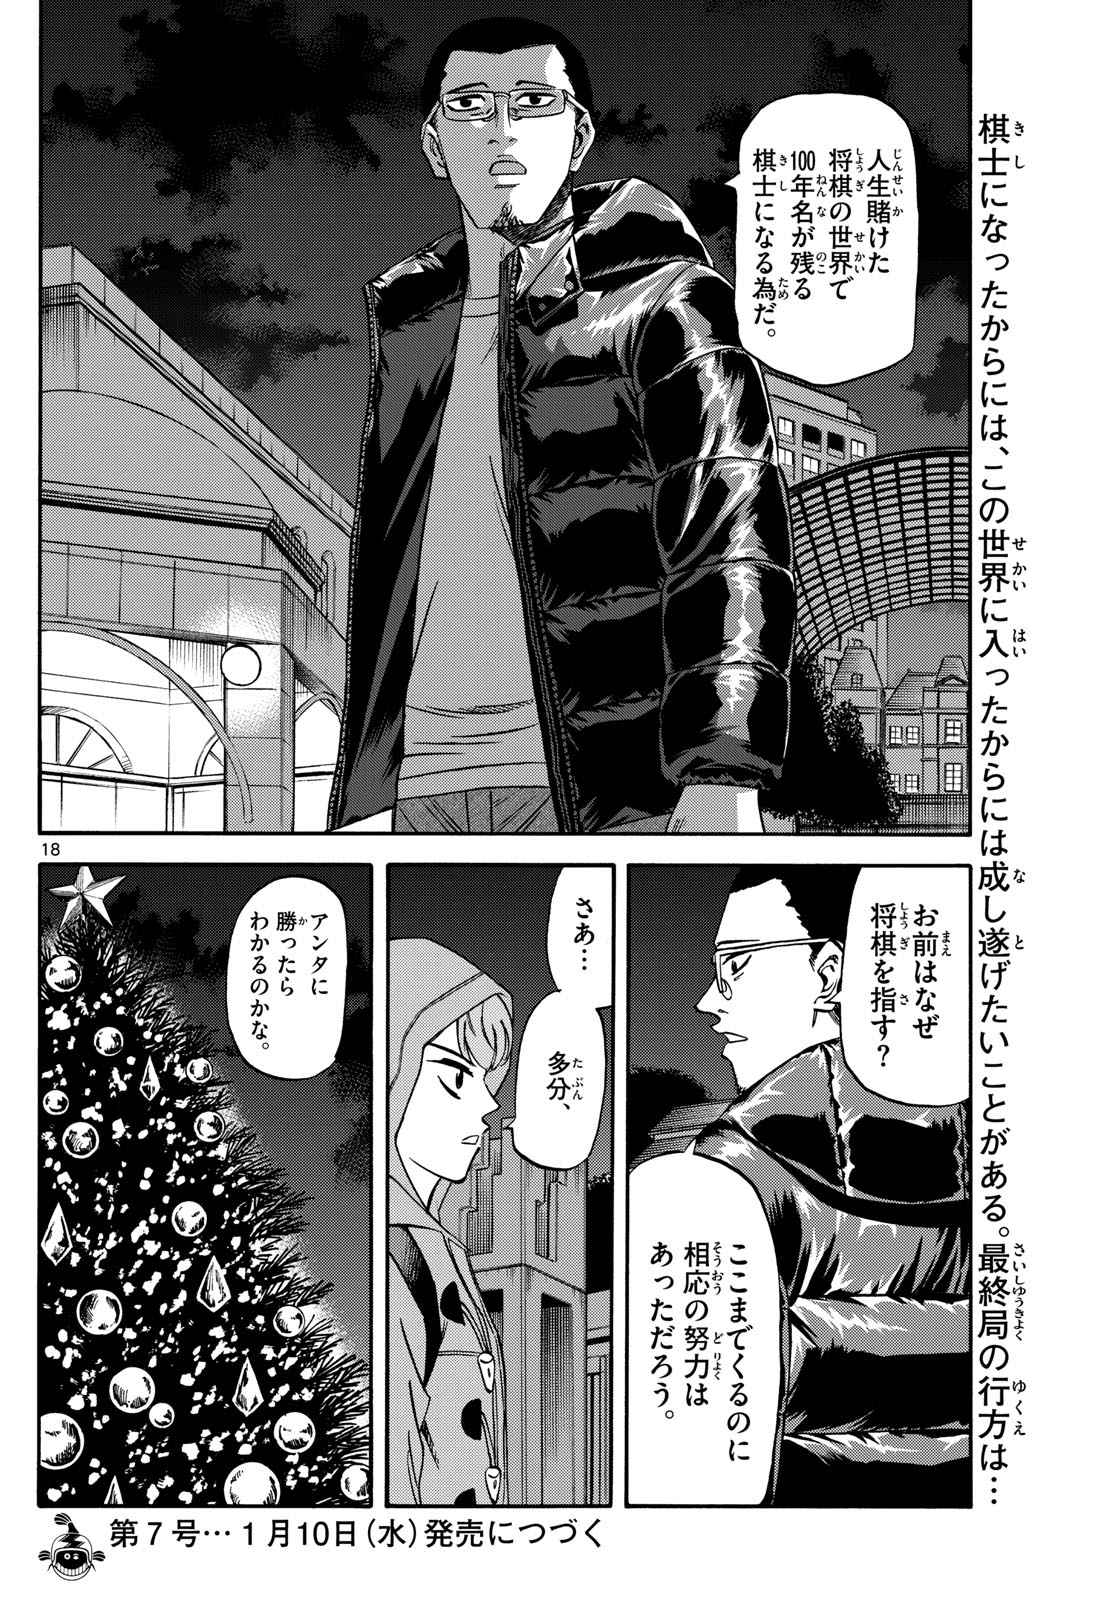 Tatsu to Ichigo - Chapter 173 - Page 18